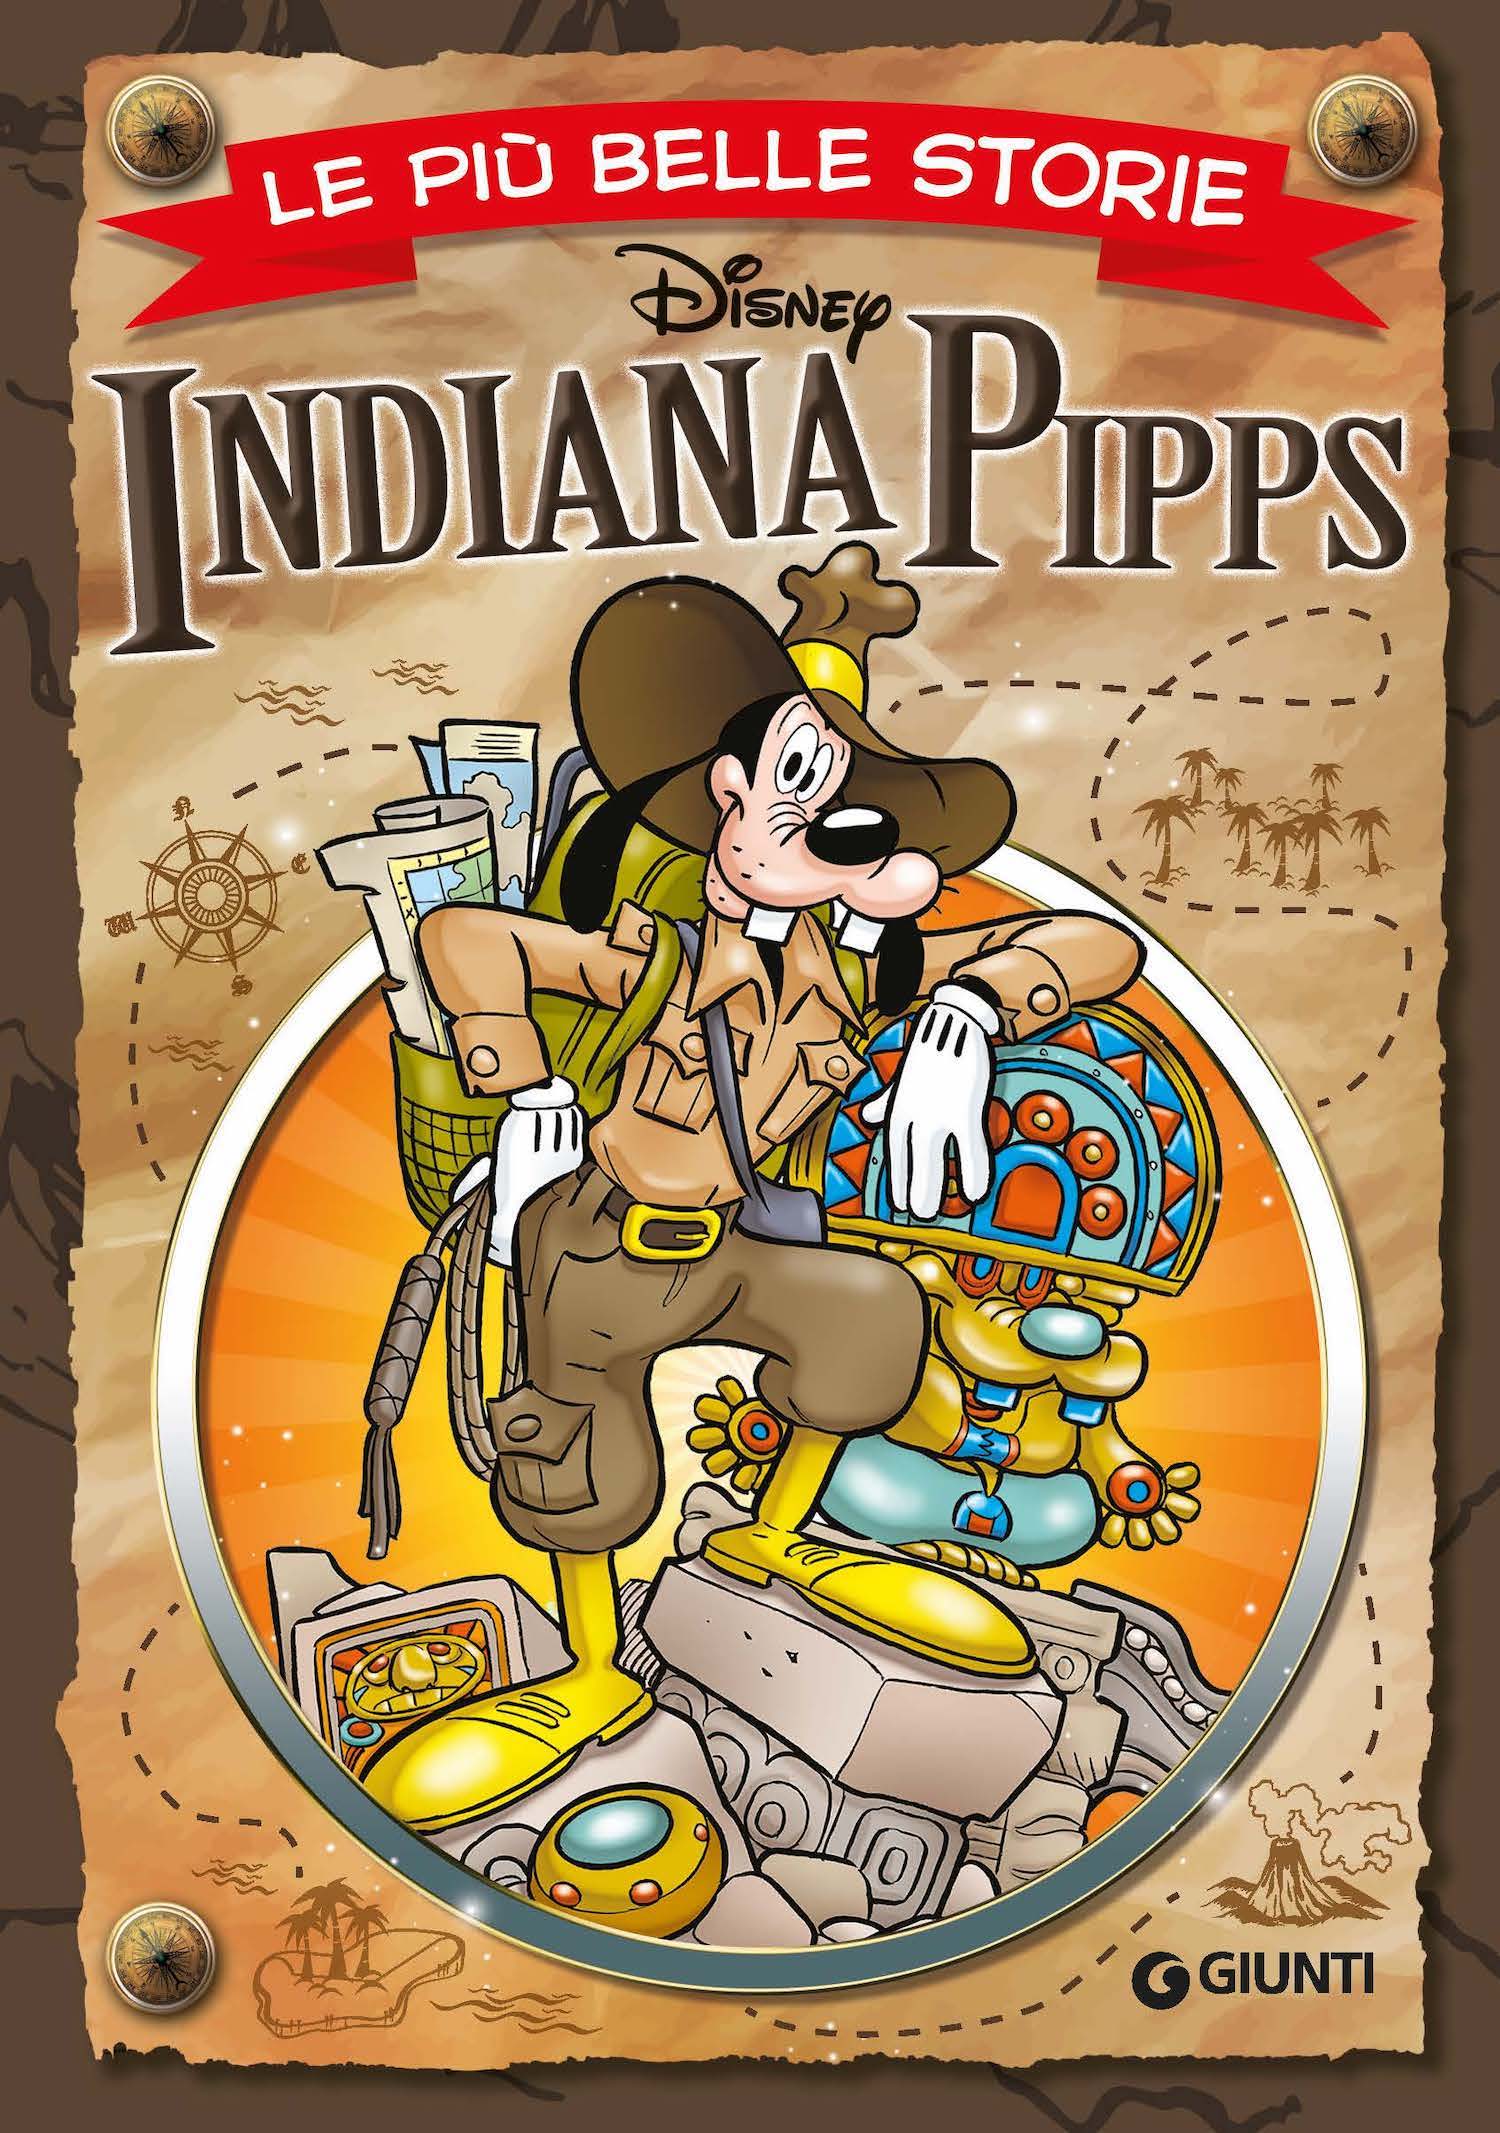 Indiana Pipps Le più belle storie Disney, Walt Disney